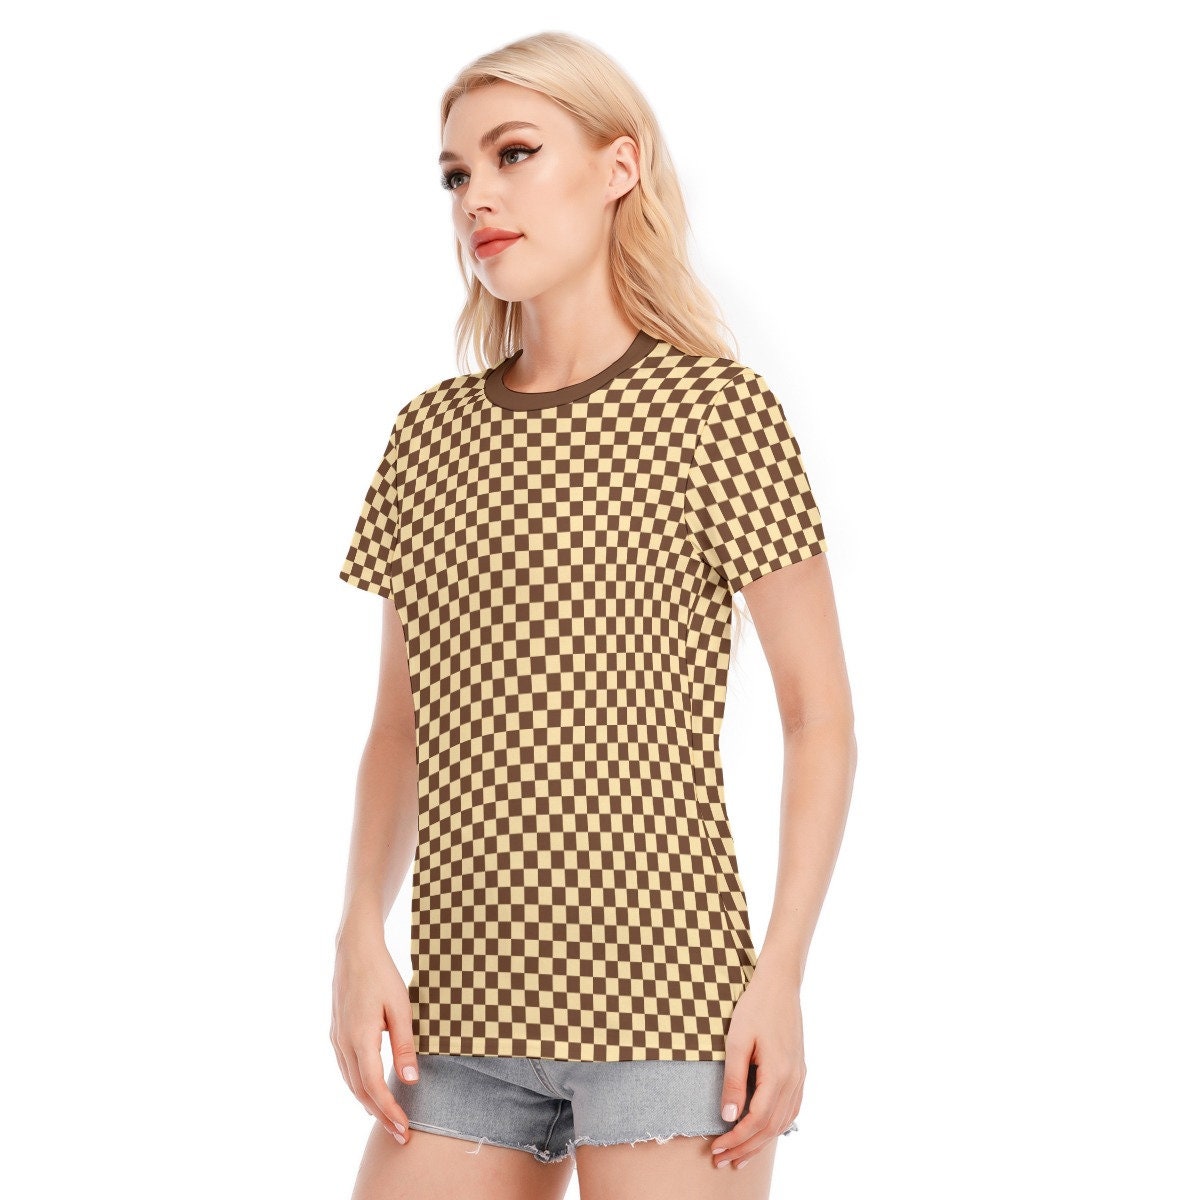 Brown Checker Tshirt, Retro Tshirt Women, 70s inspired top, 60s 70s style tshirt, Retro Top, Checker Top, Womens Tops, Retro Brown Shirt,